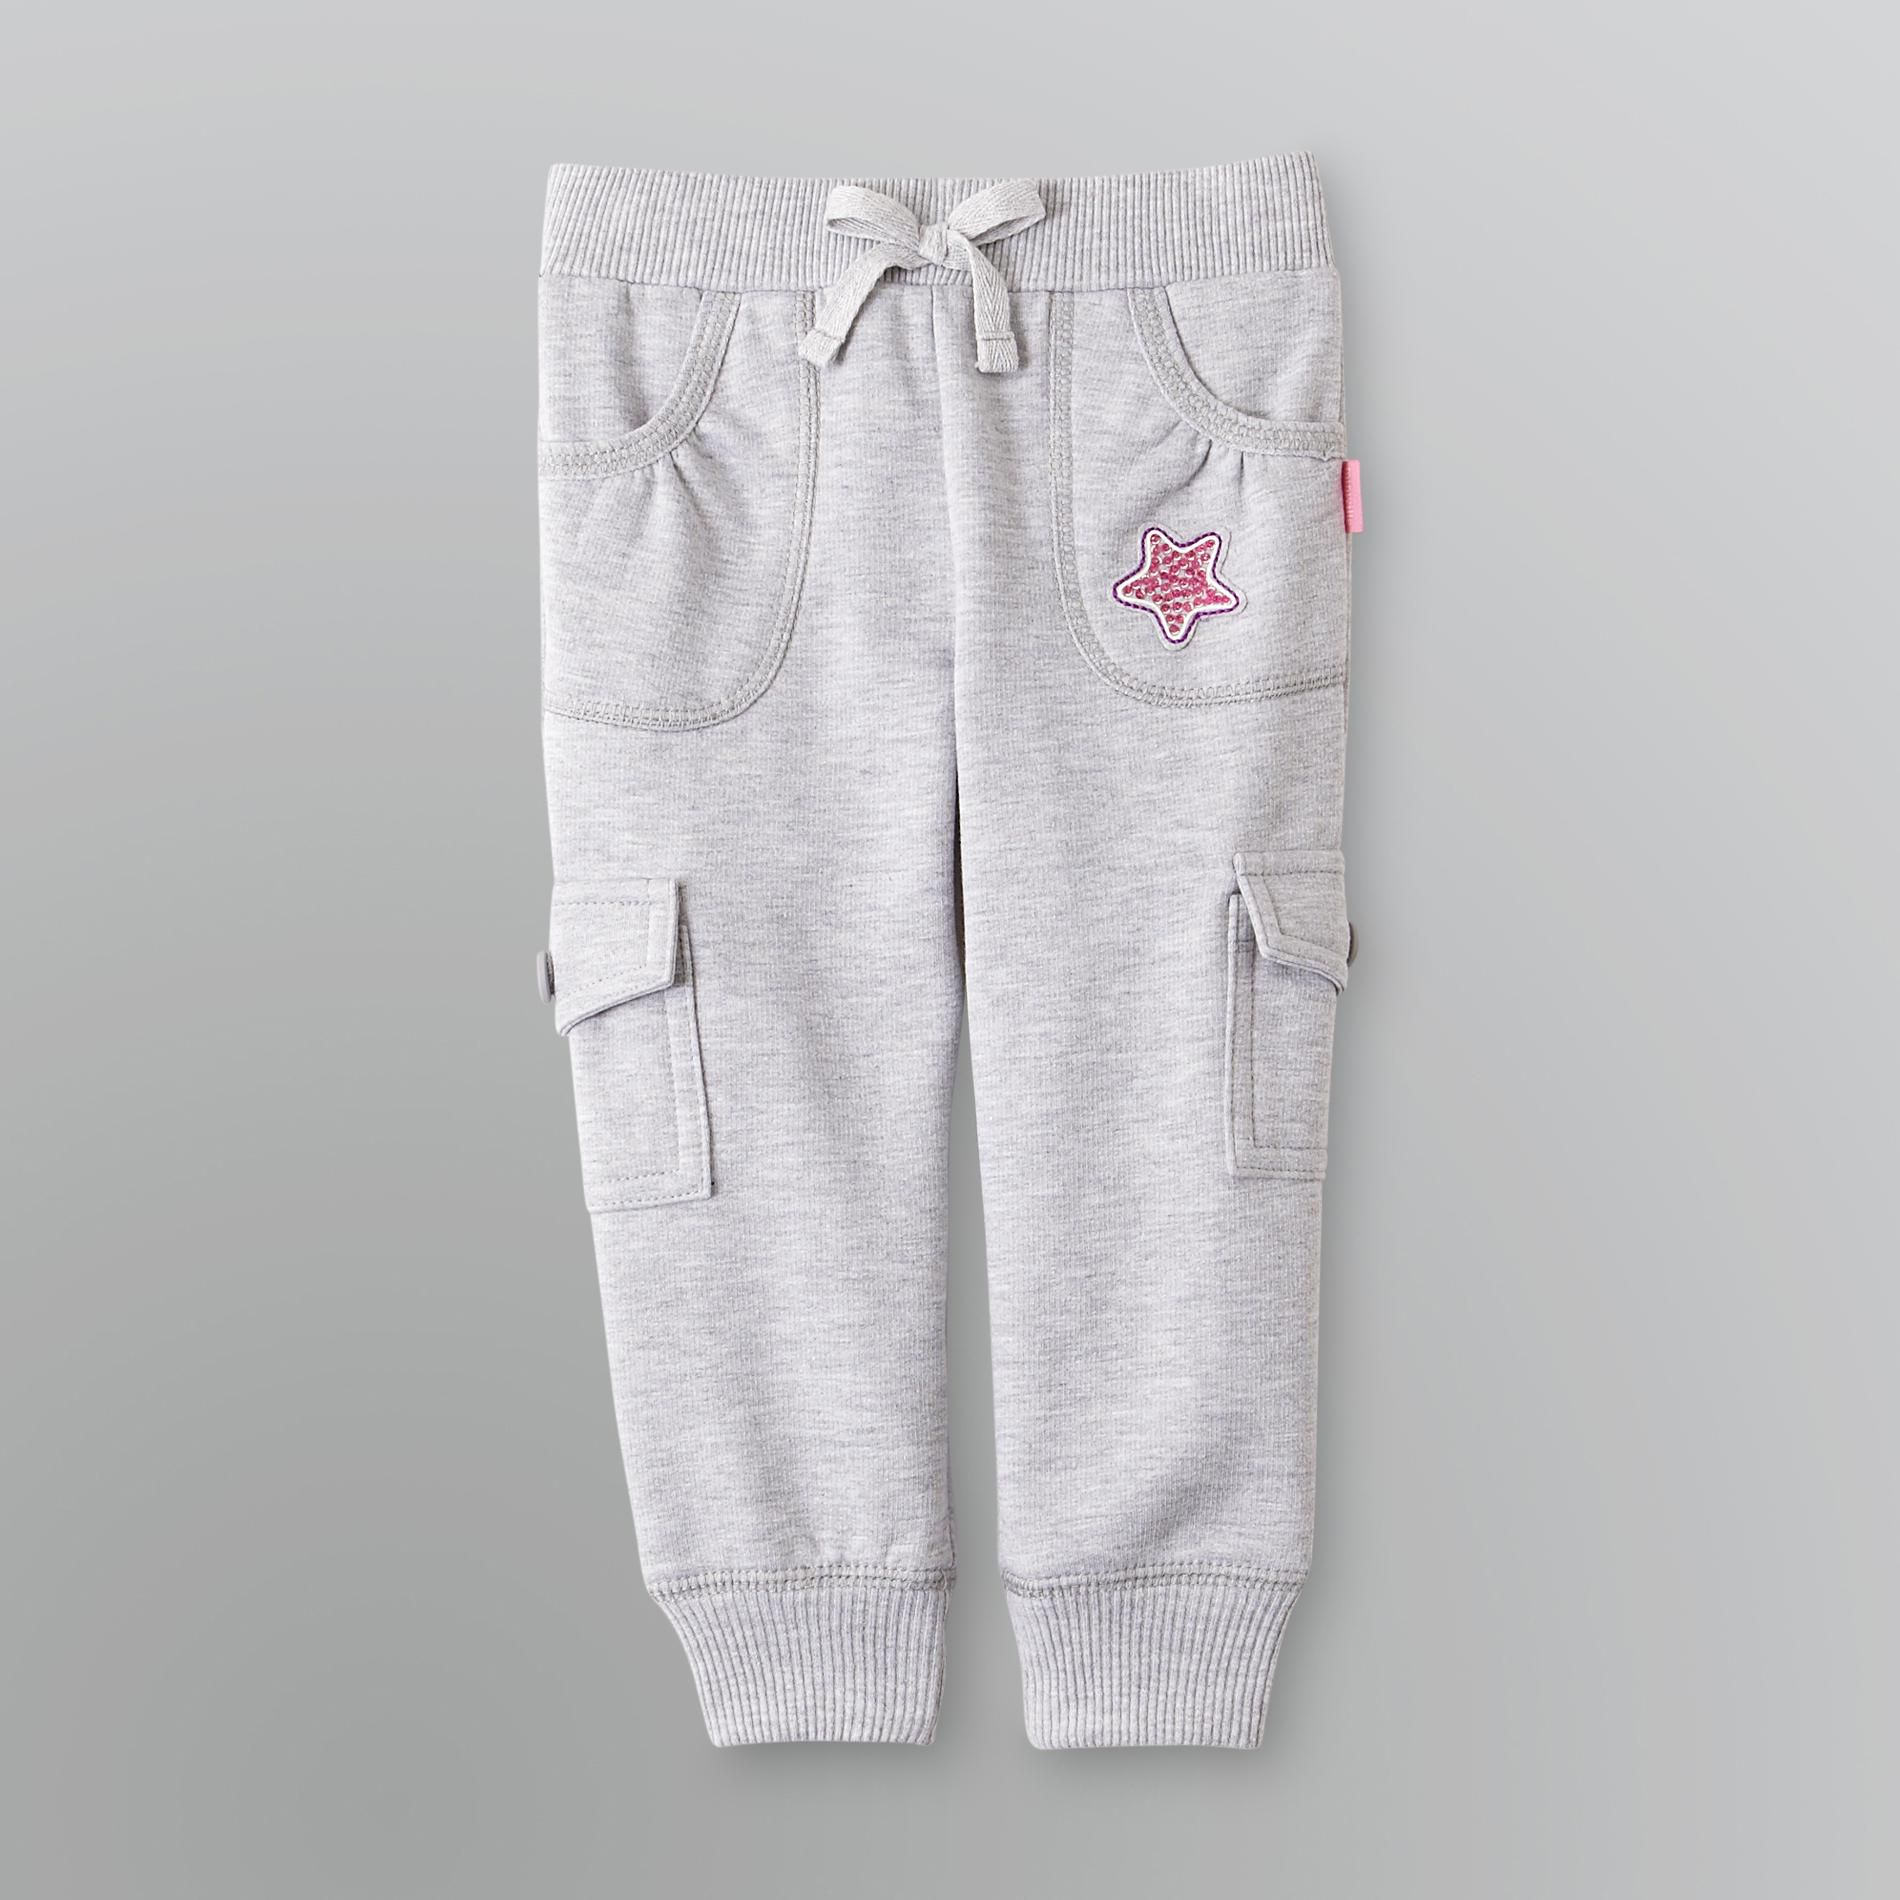 Miniville Infant & Toddler Girl's Fleece Sweatpants - Star